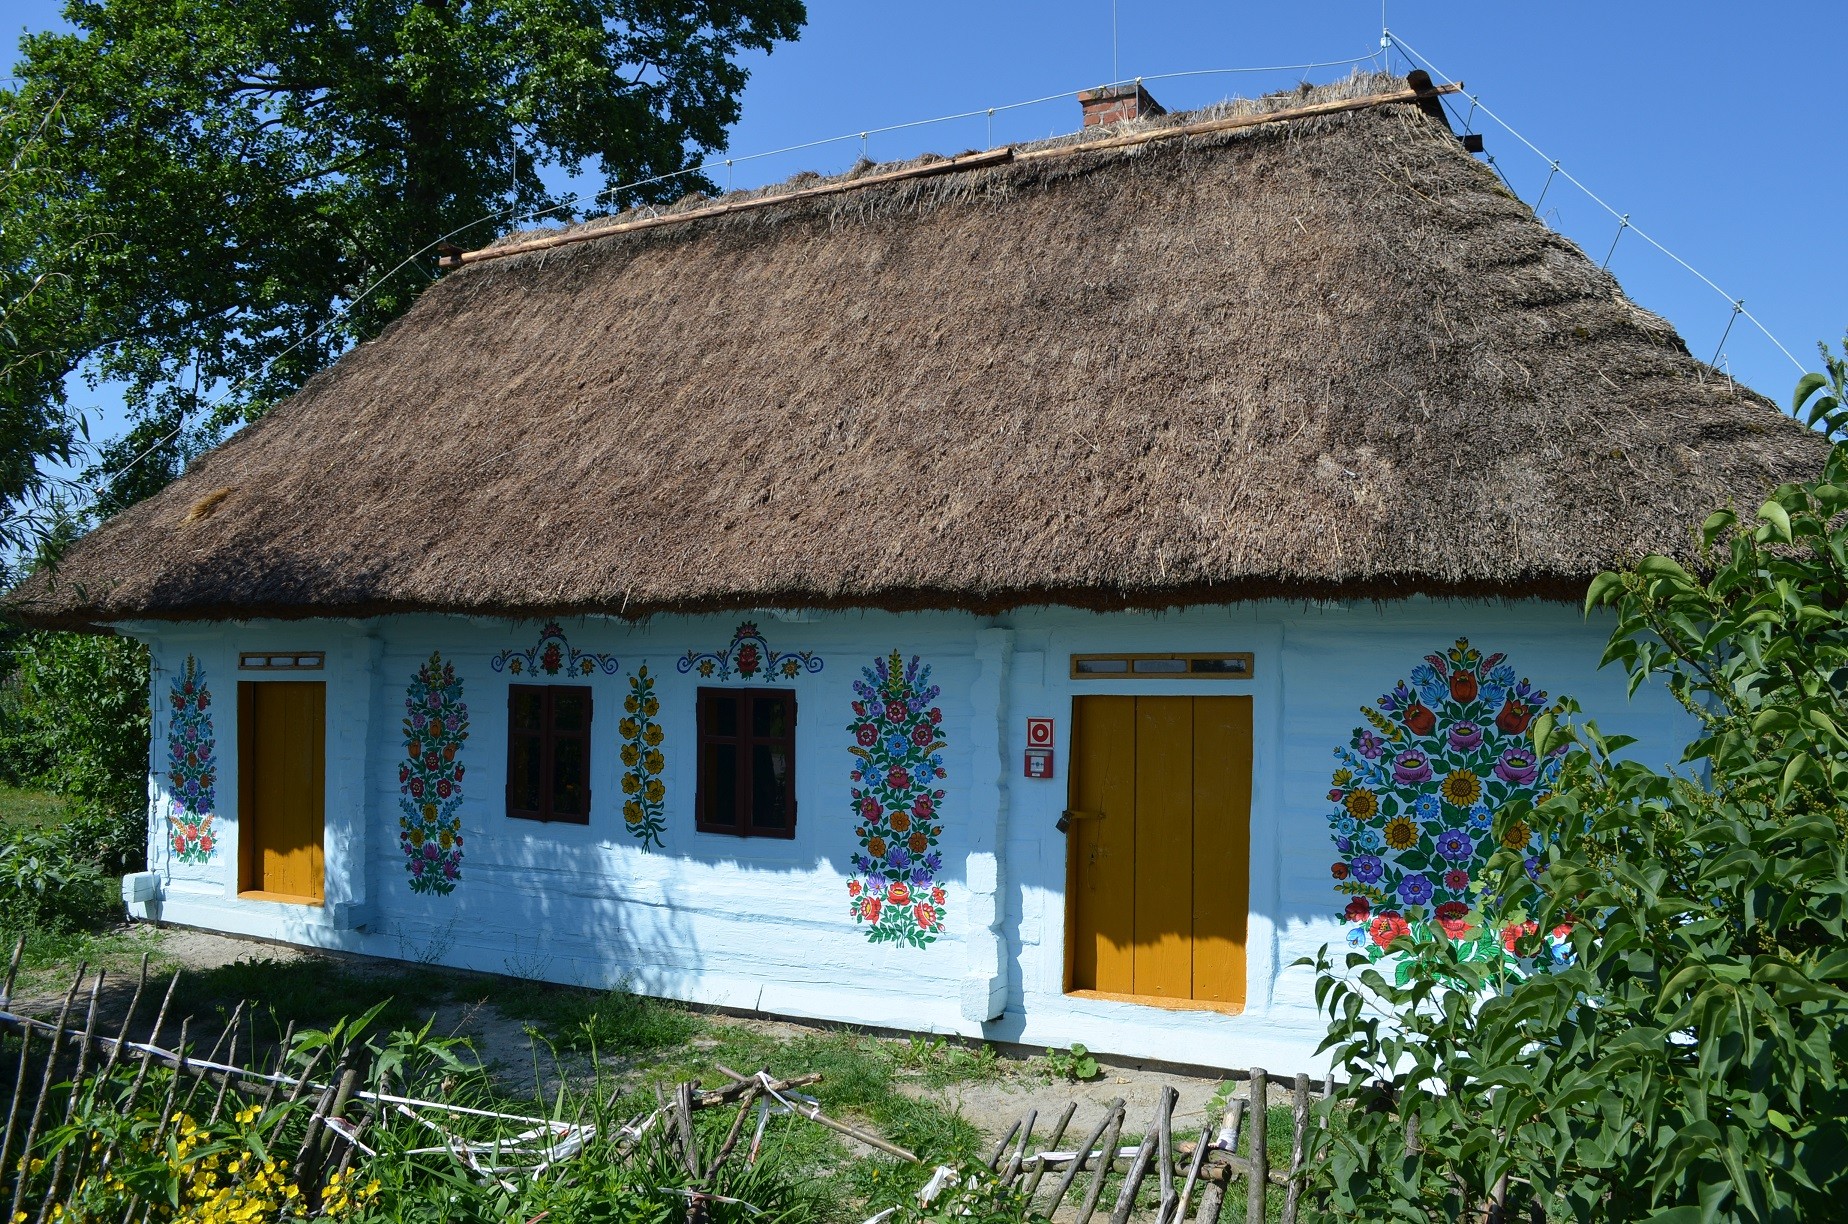 Drewniana chałupa pomalowana na biało kryta strzechą. Na ścianach domu są wielobarwne kompozycje kwiatowe.